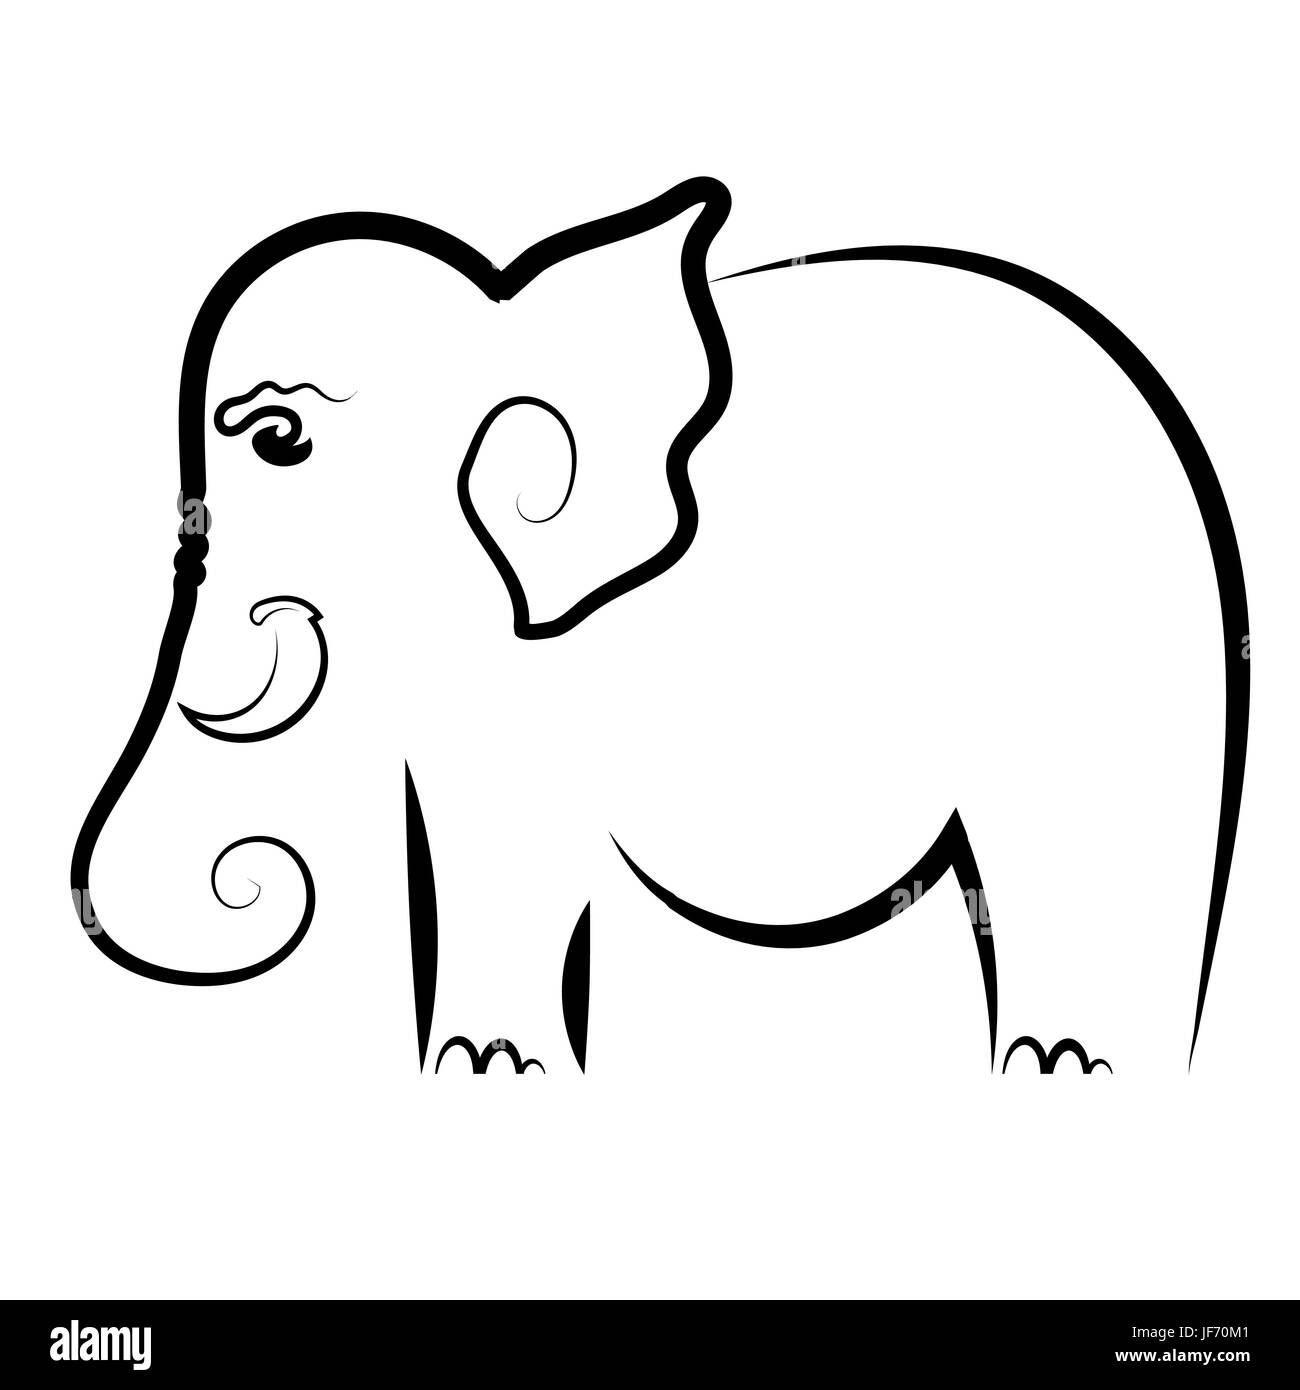 Big Elephant Symbol Isolated on White Background Stock Vector